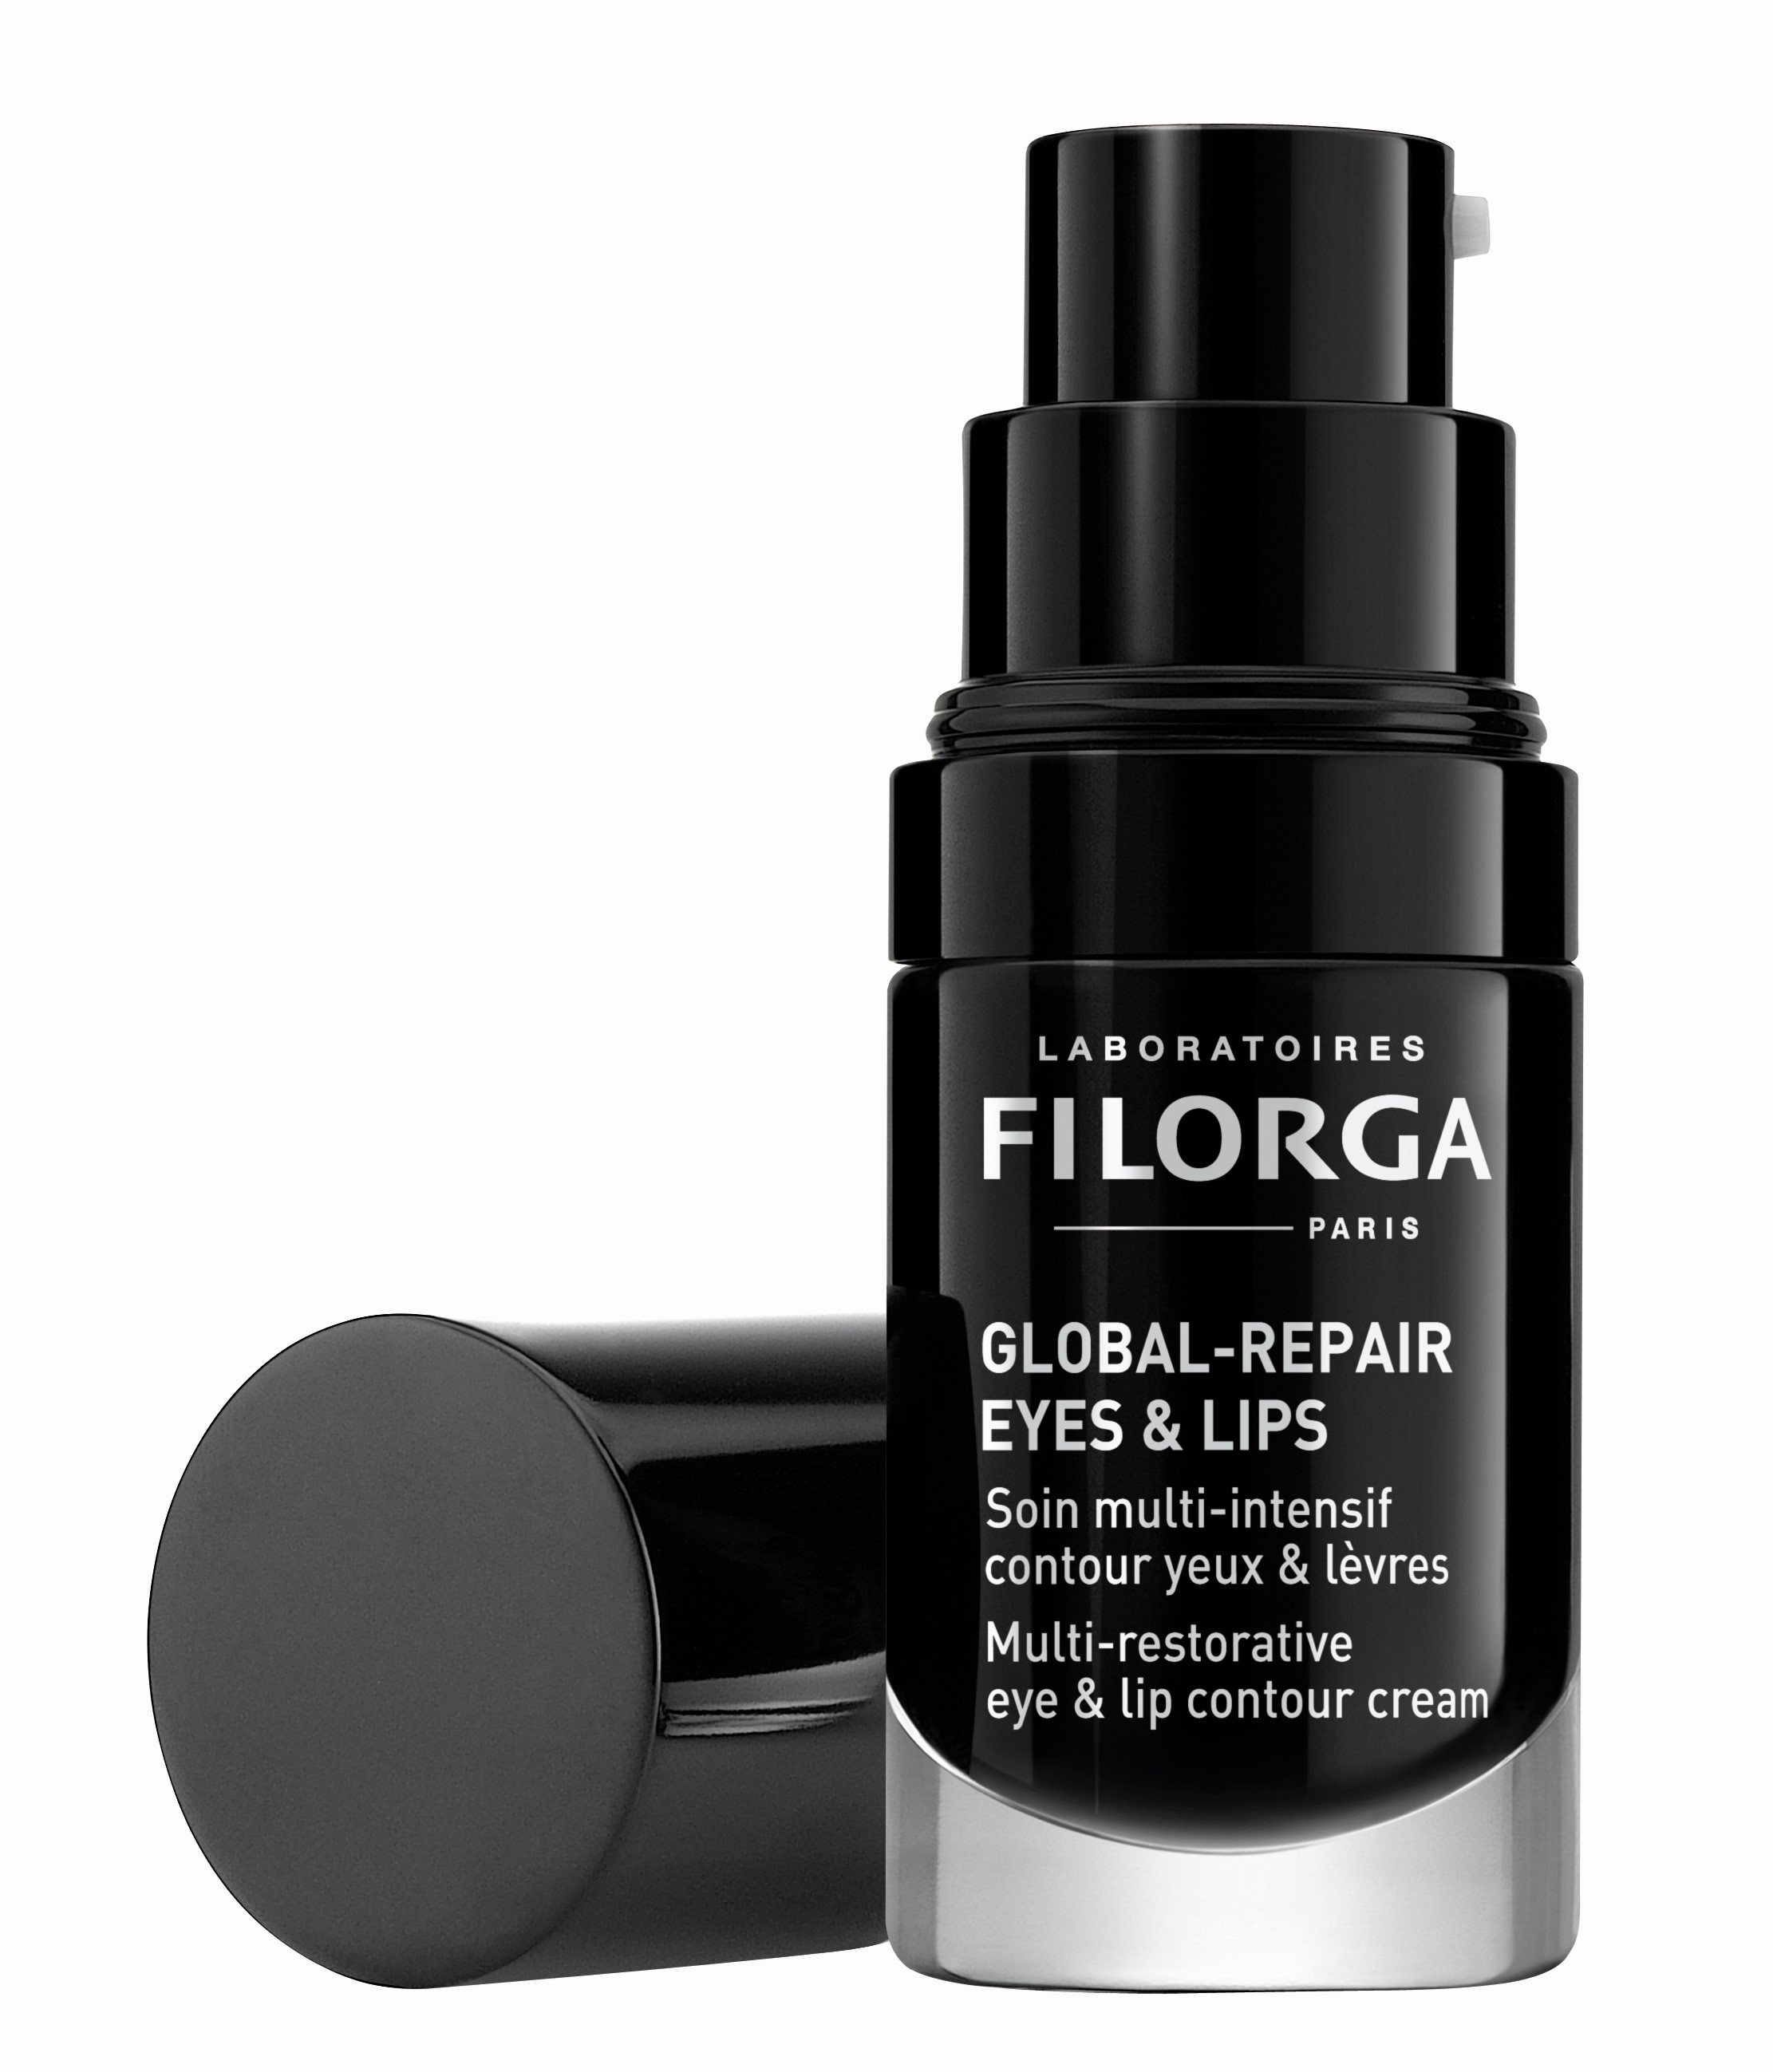 Billede af Filorga Global-Repair Eyes & Lips 15 ml